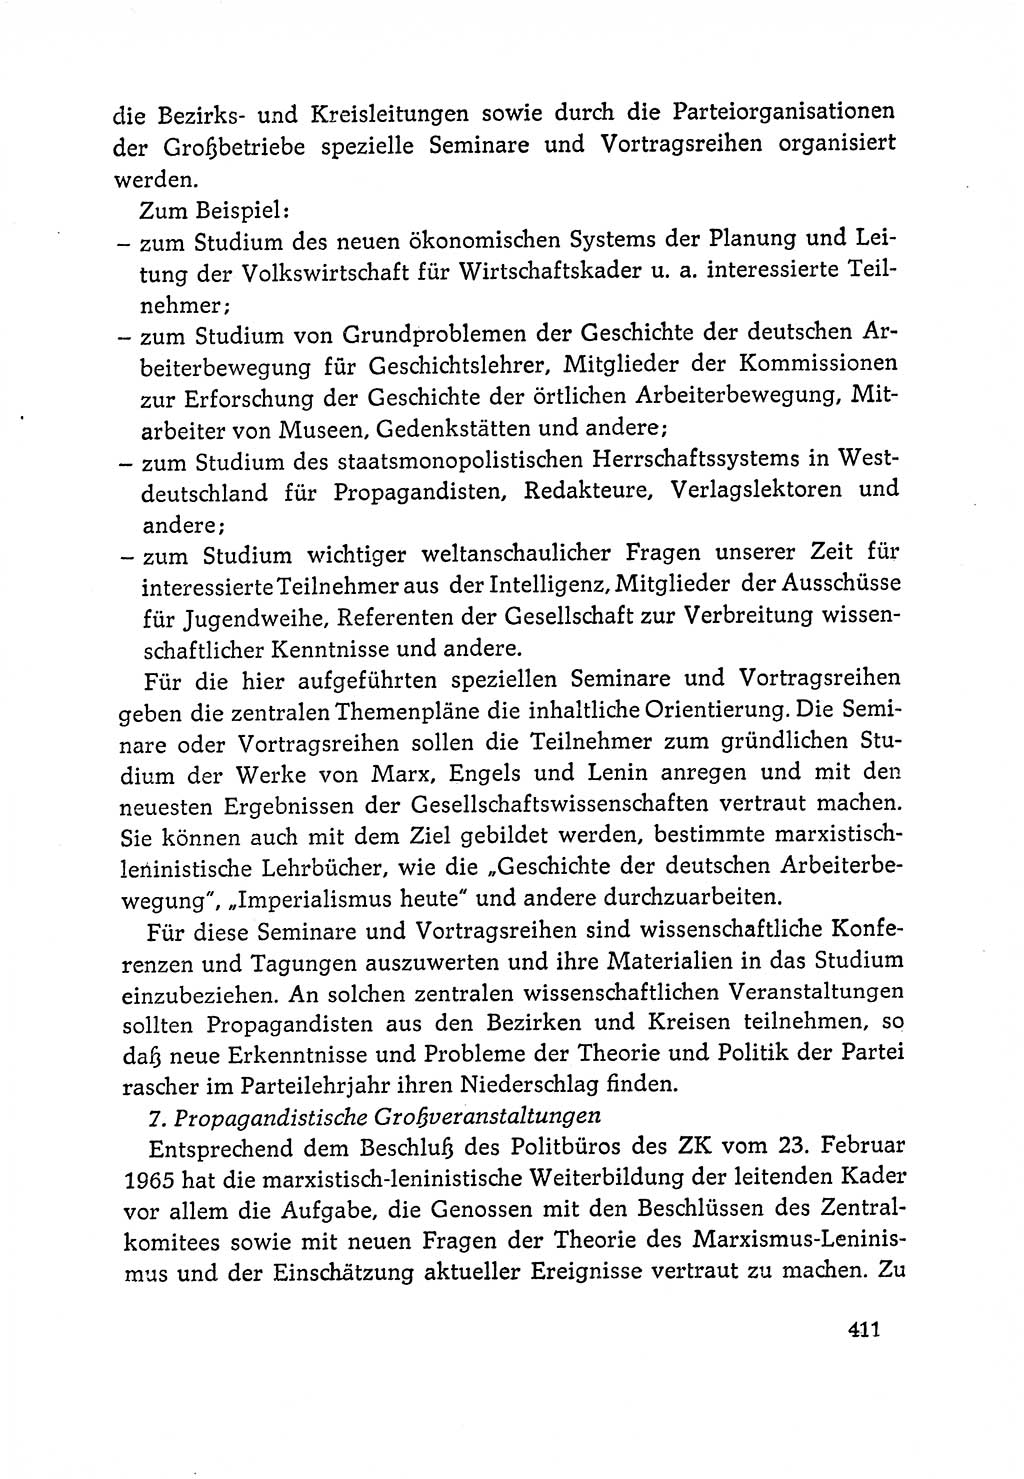 Dokumente der Sozialistischen Einheitspartei Deutschlands (SED) [Deutsche Demokratische Republik (DDR)] 1964-1965, Seite 411 (Dok. SED DDR 1964-1965, S. 411)